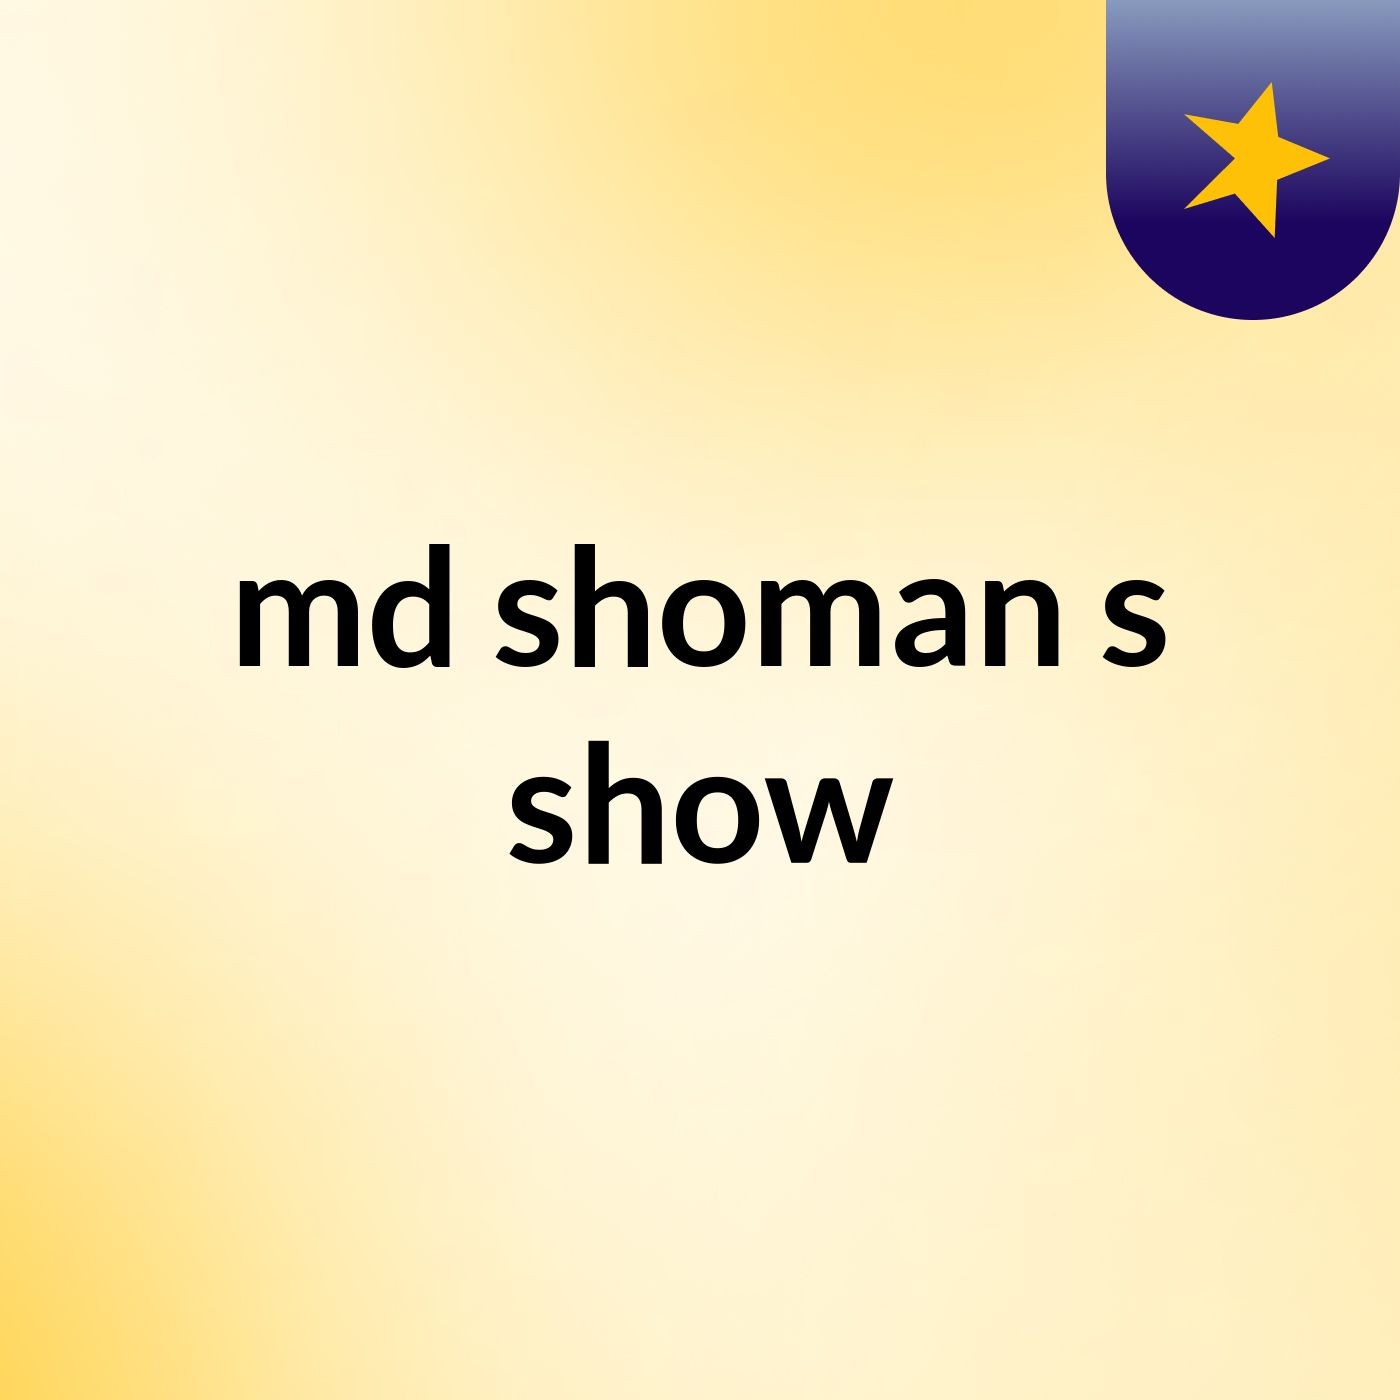 md shoman's show